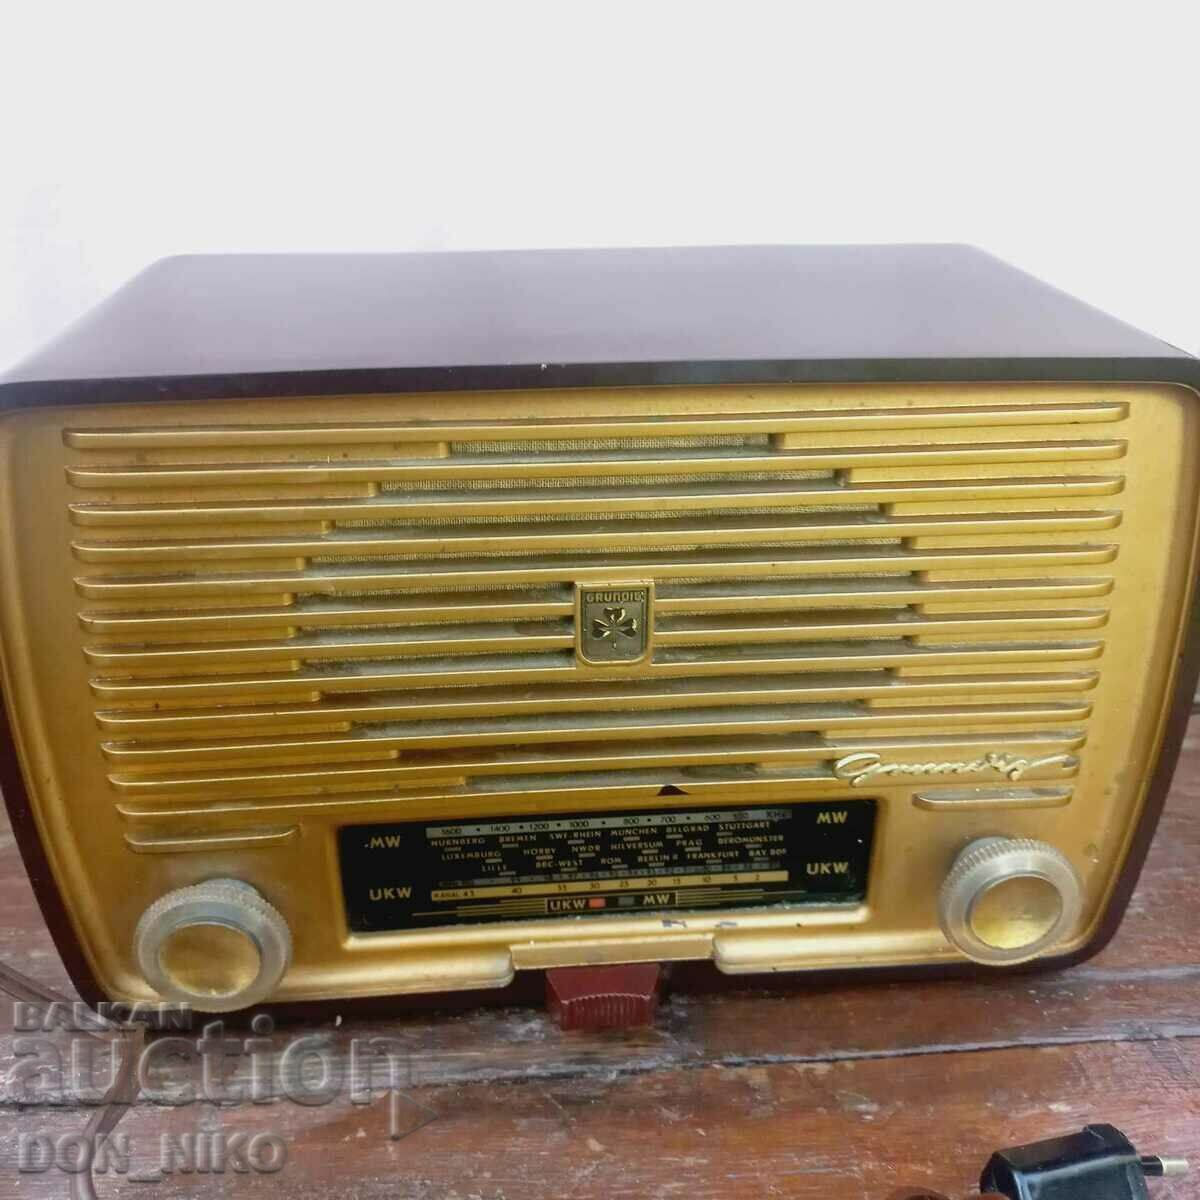 Радио GRUNDIG 1954 г